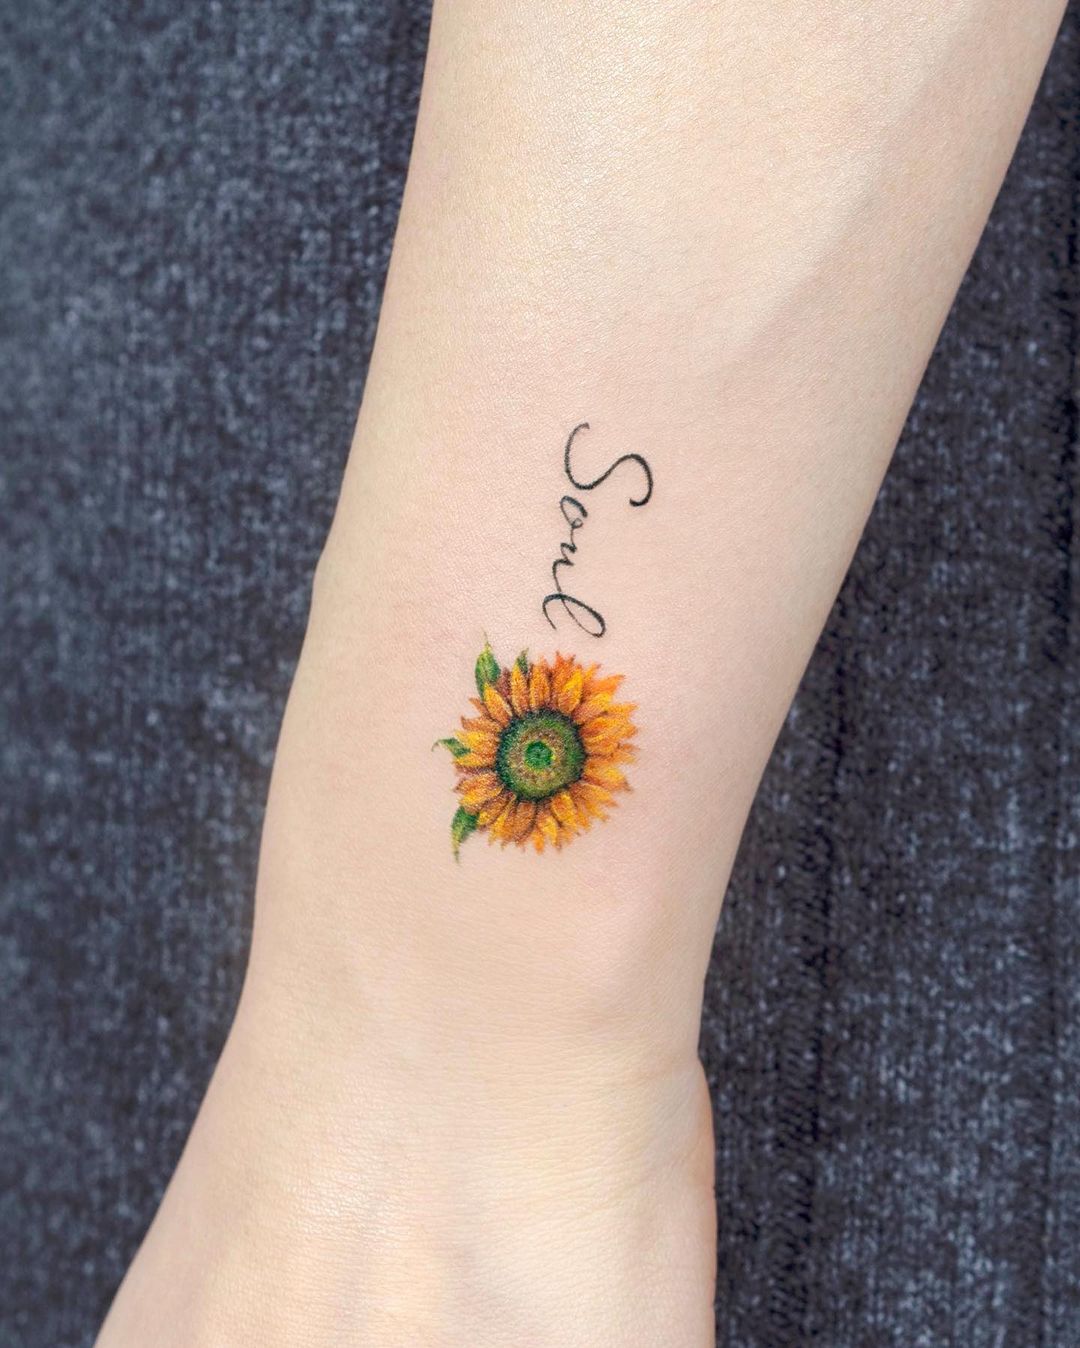 Minimalist sunflower tattoo by tilda tattoo